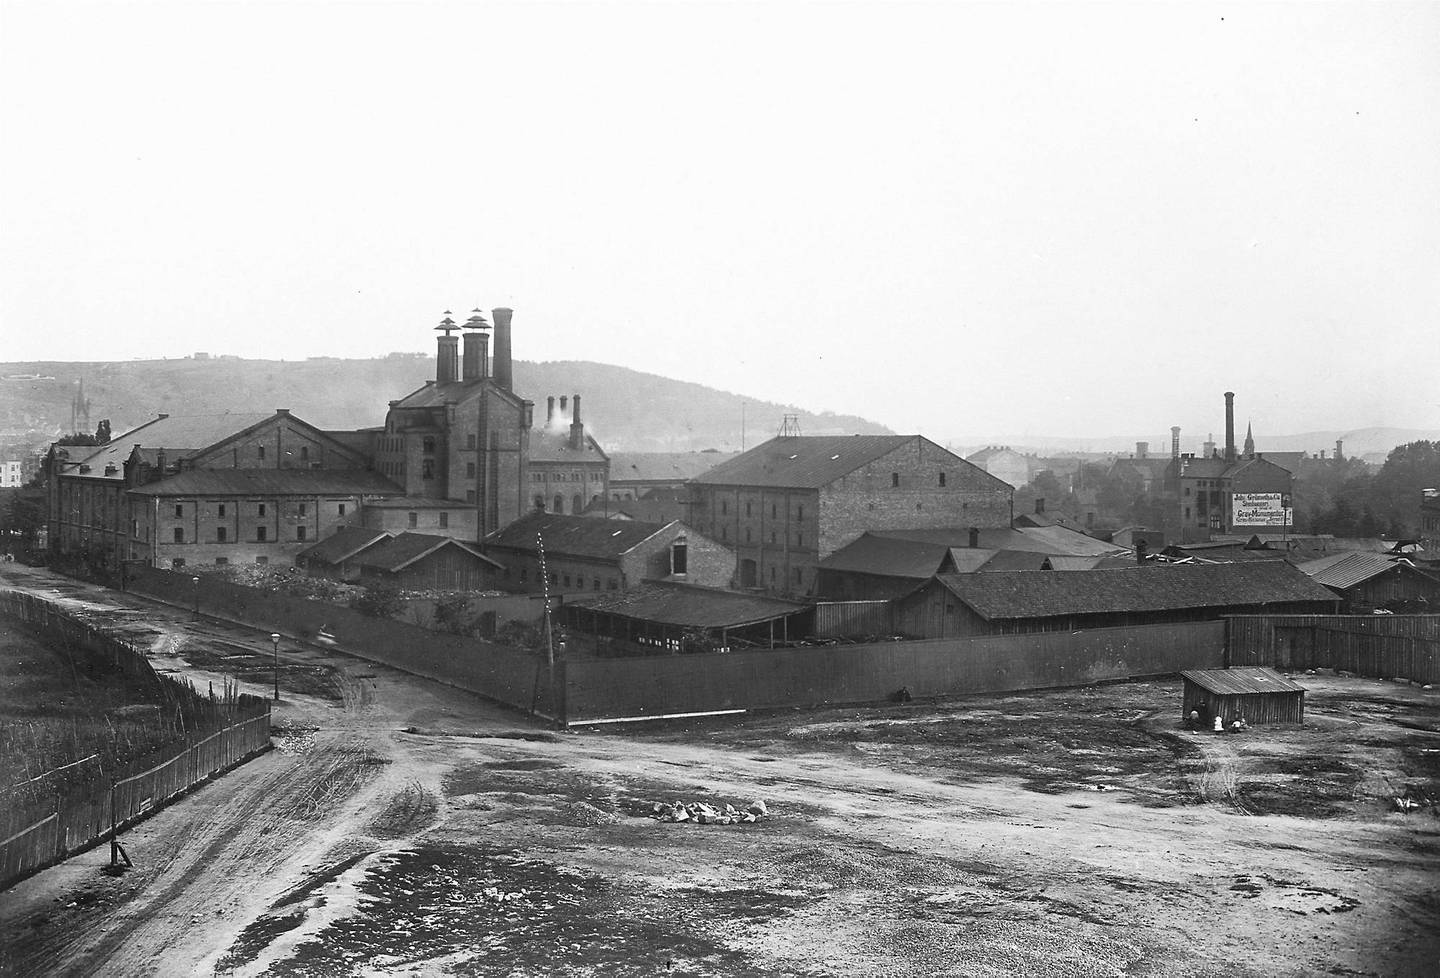 SCHOUS BRYGGERI: Holdt til i Trondheimsveien 2 i over hundre år, fra 1873 til 1981. Bryggeriet fusjonerte med Frydenlund i 1977. Bildet viser området omkring 1880. FOTO: UKJENT PERSON/OSLO MUSEUM